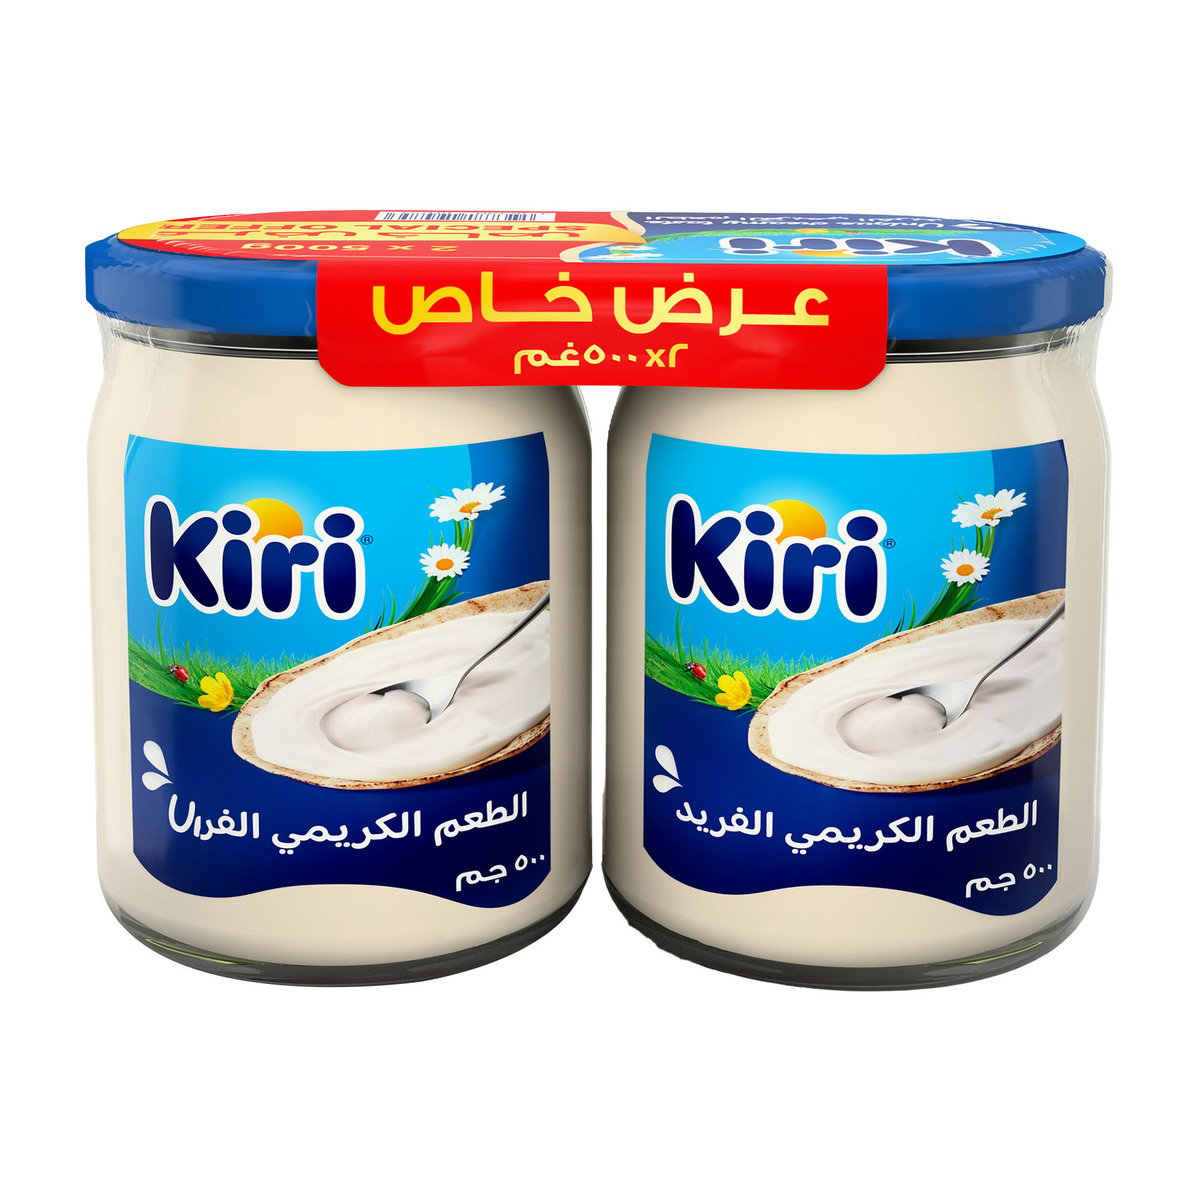 Buy Kiri White Cheese Jar Value Pack 2 x 500 g Online at Best Price | Jar Cheese | Lulu UAE in UAE